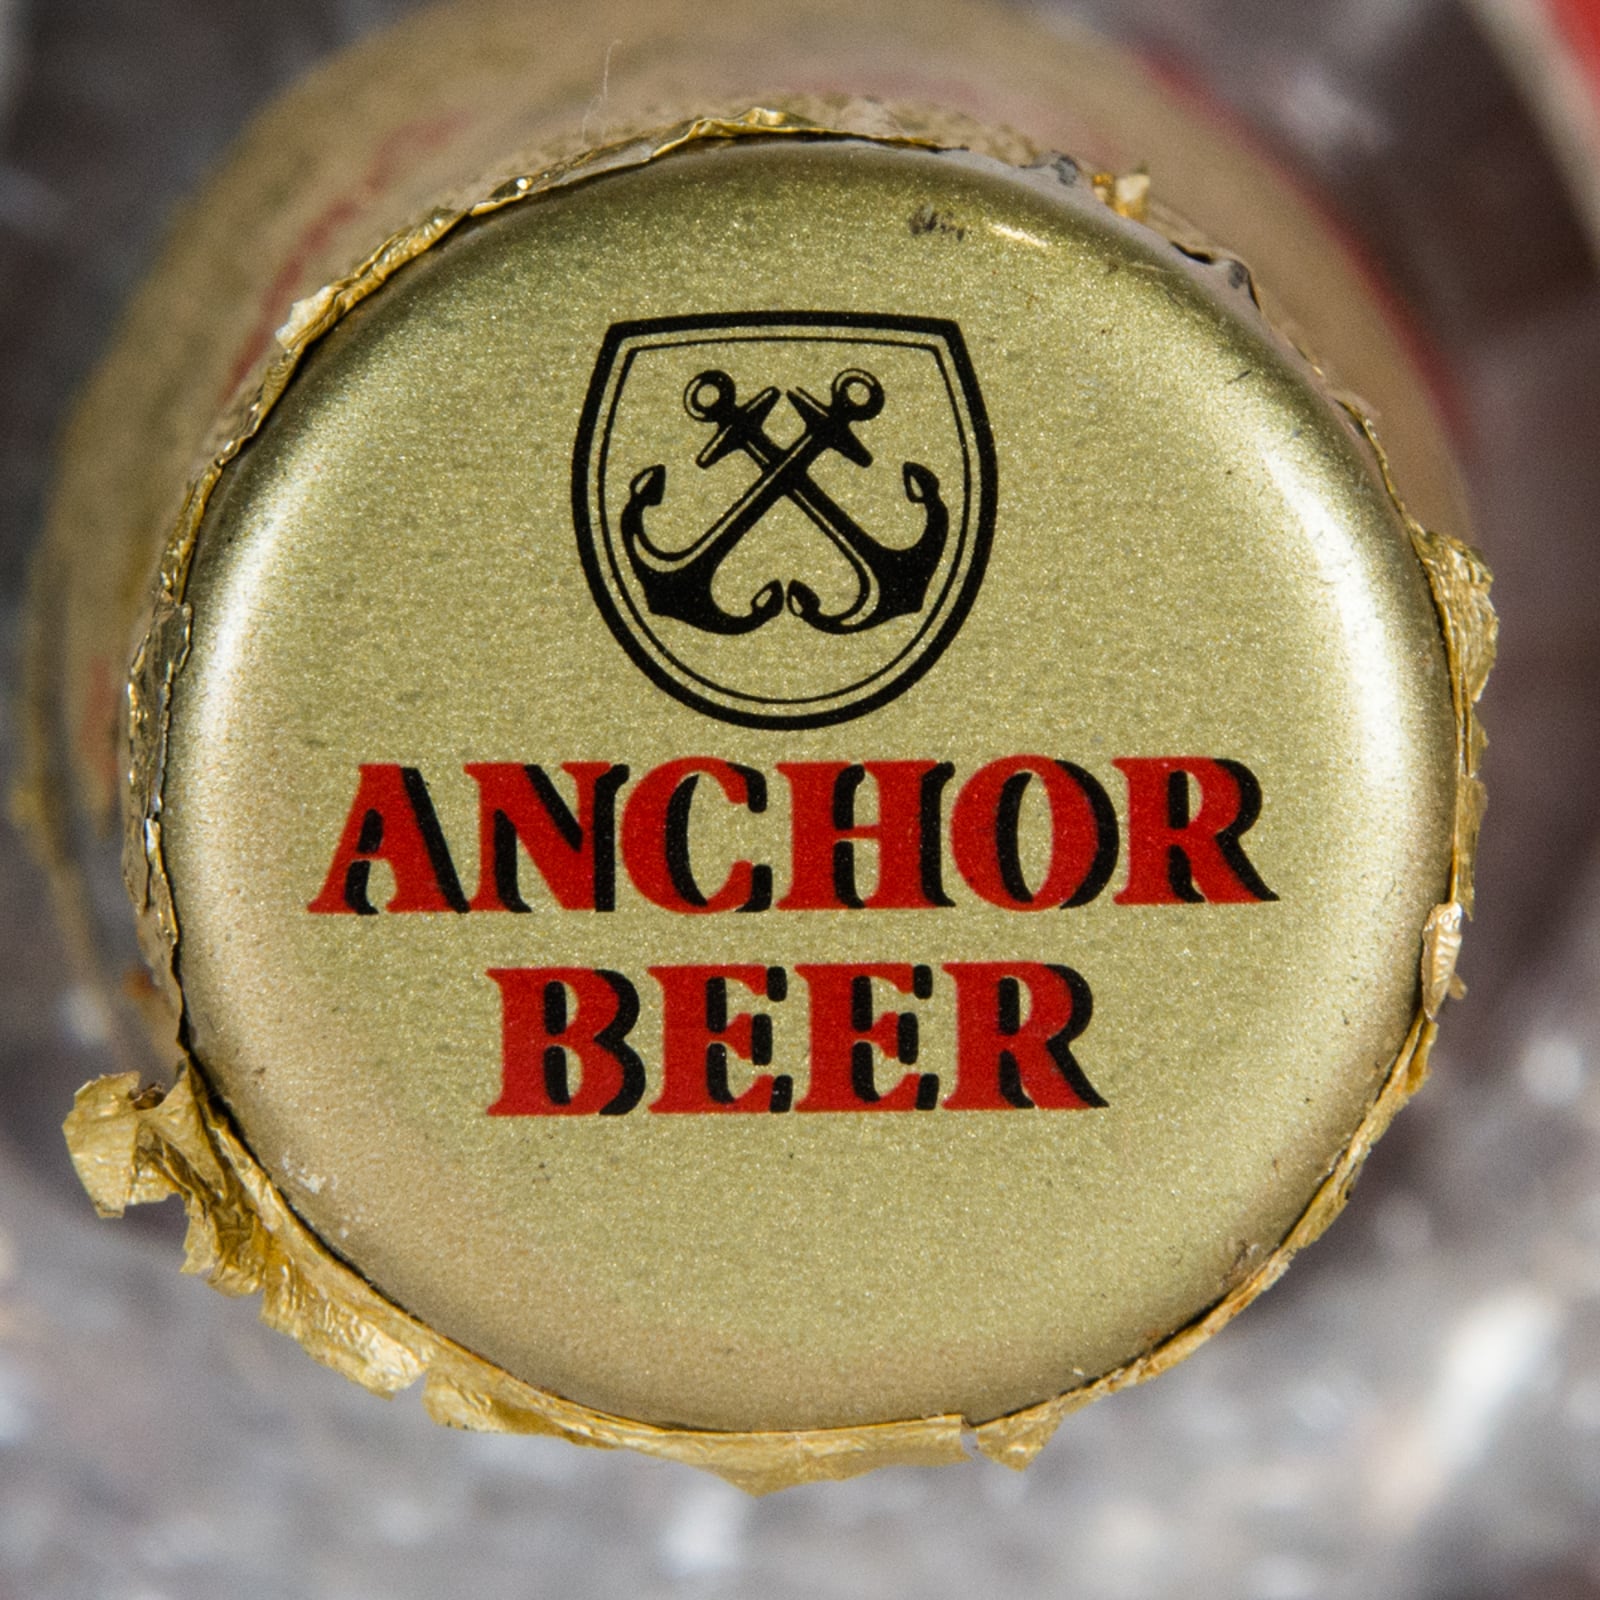 Anchor Beer "Pilsener" Bottle, 640ml